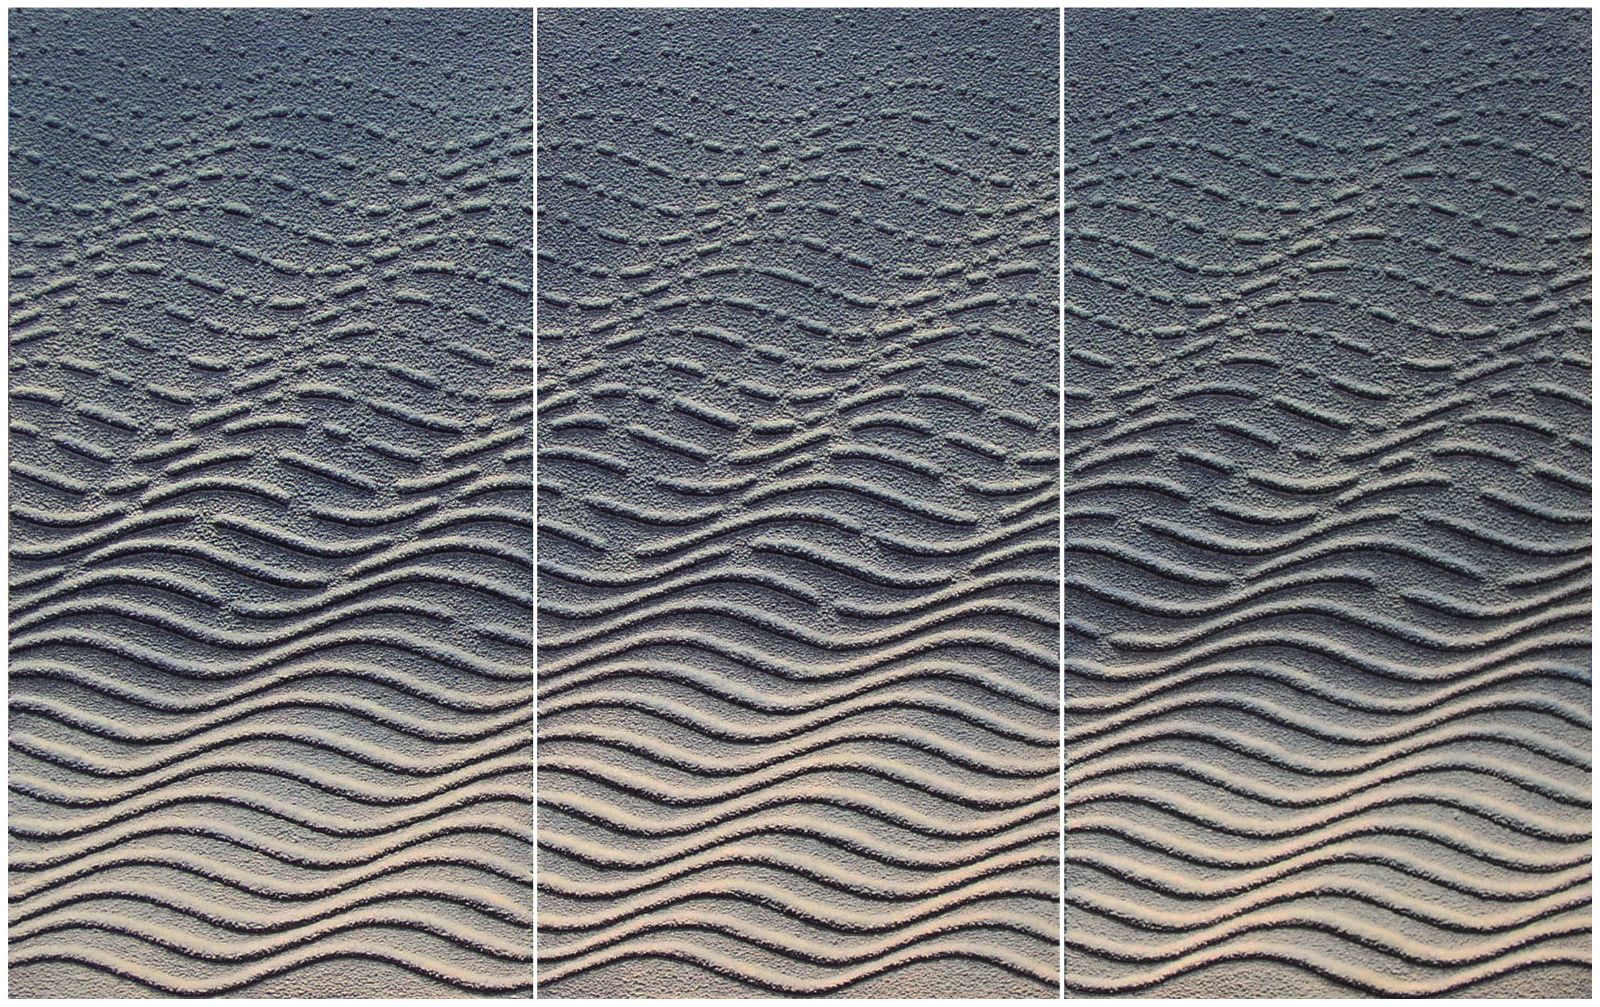  Finding Rhythm (Triptych)